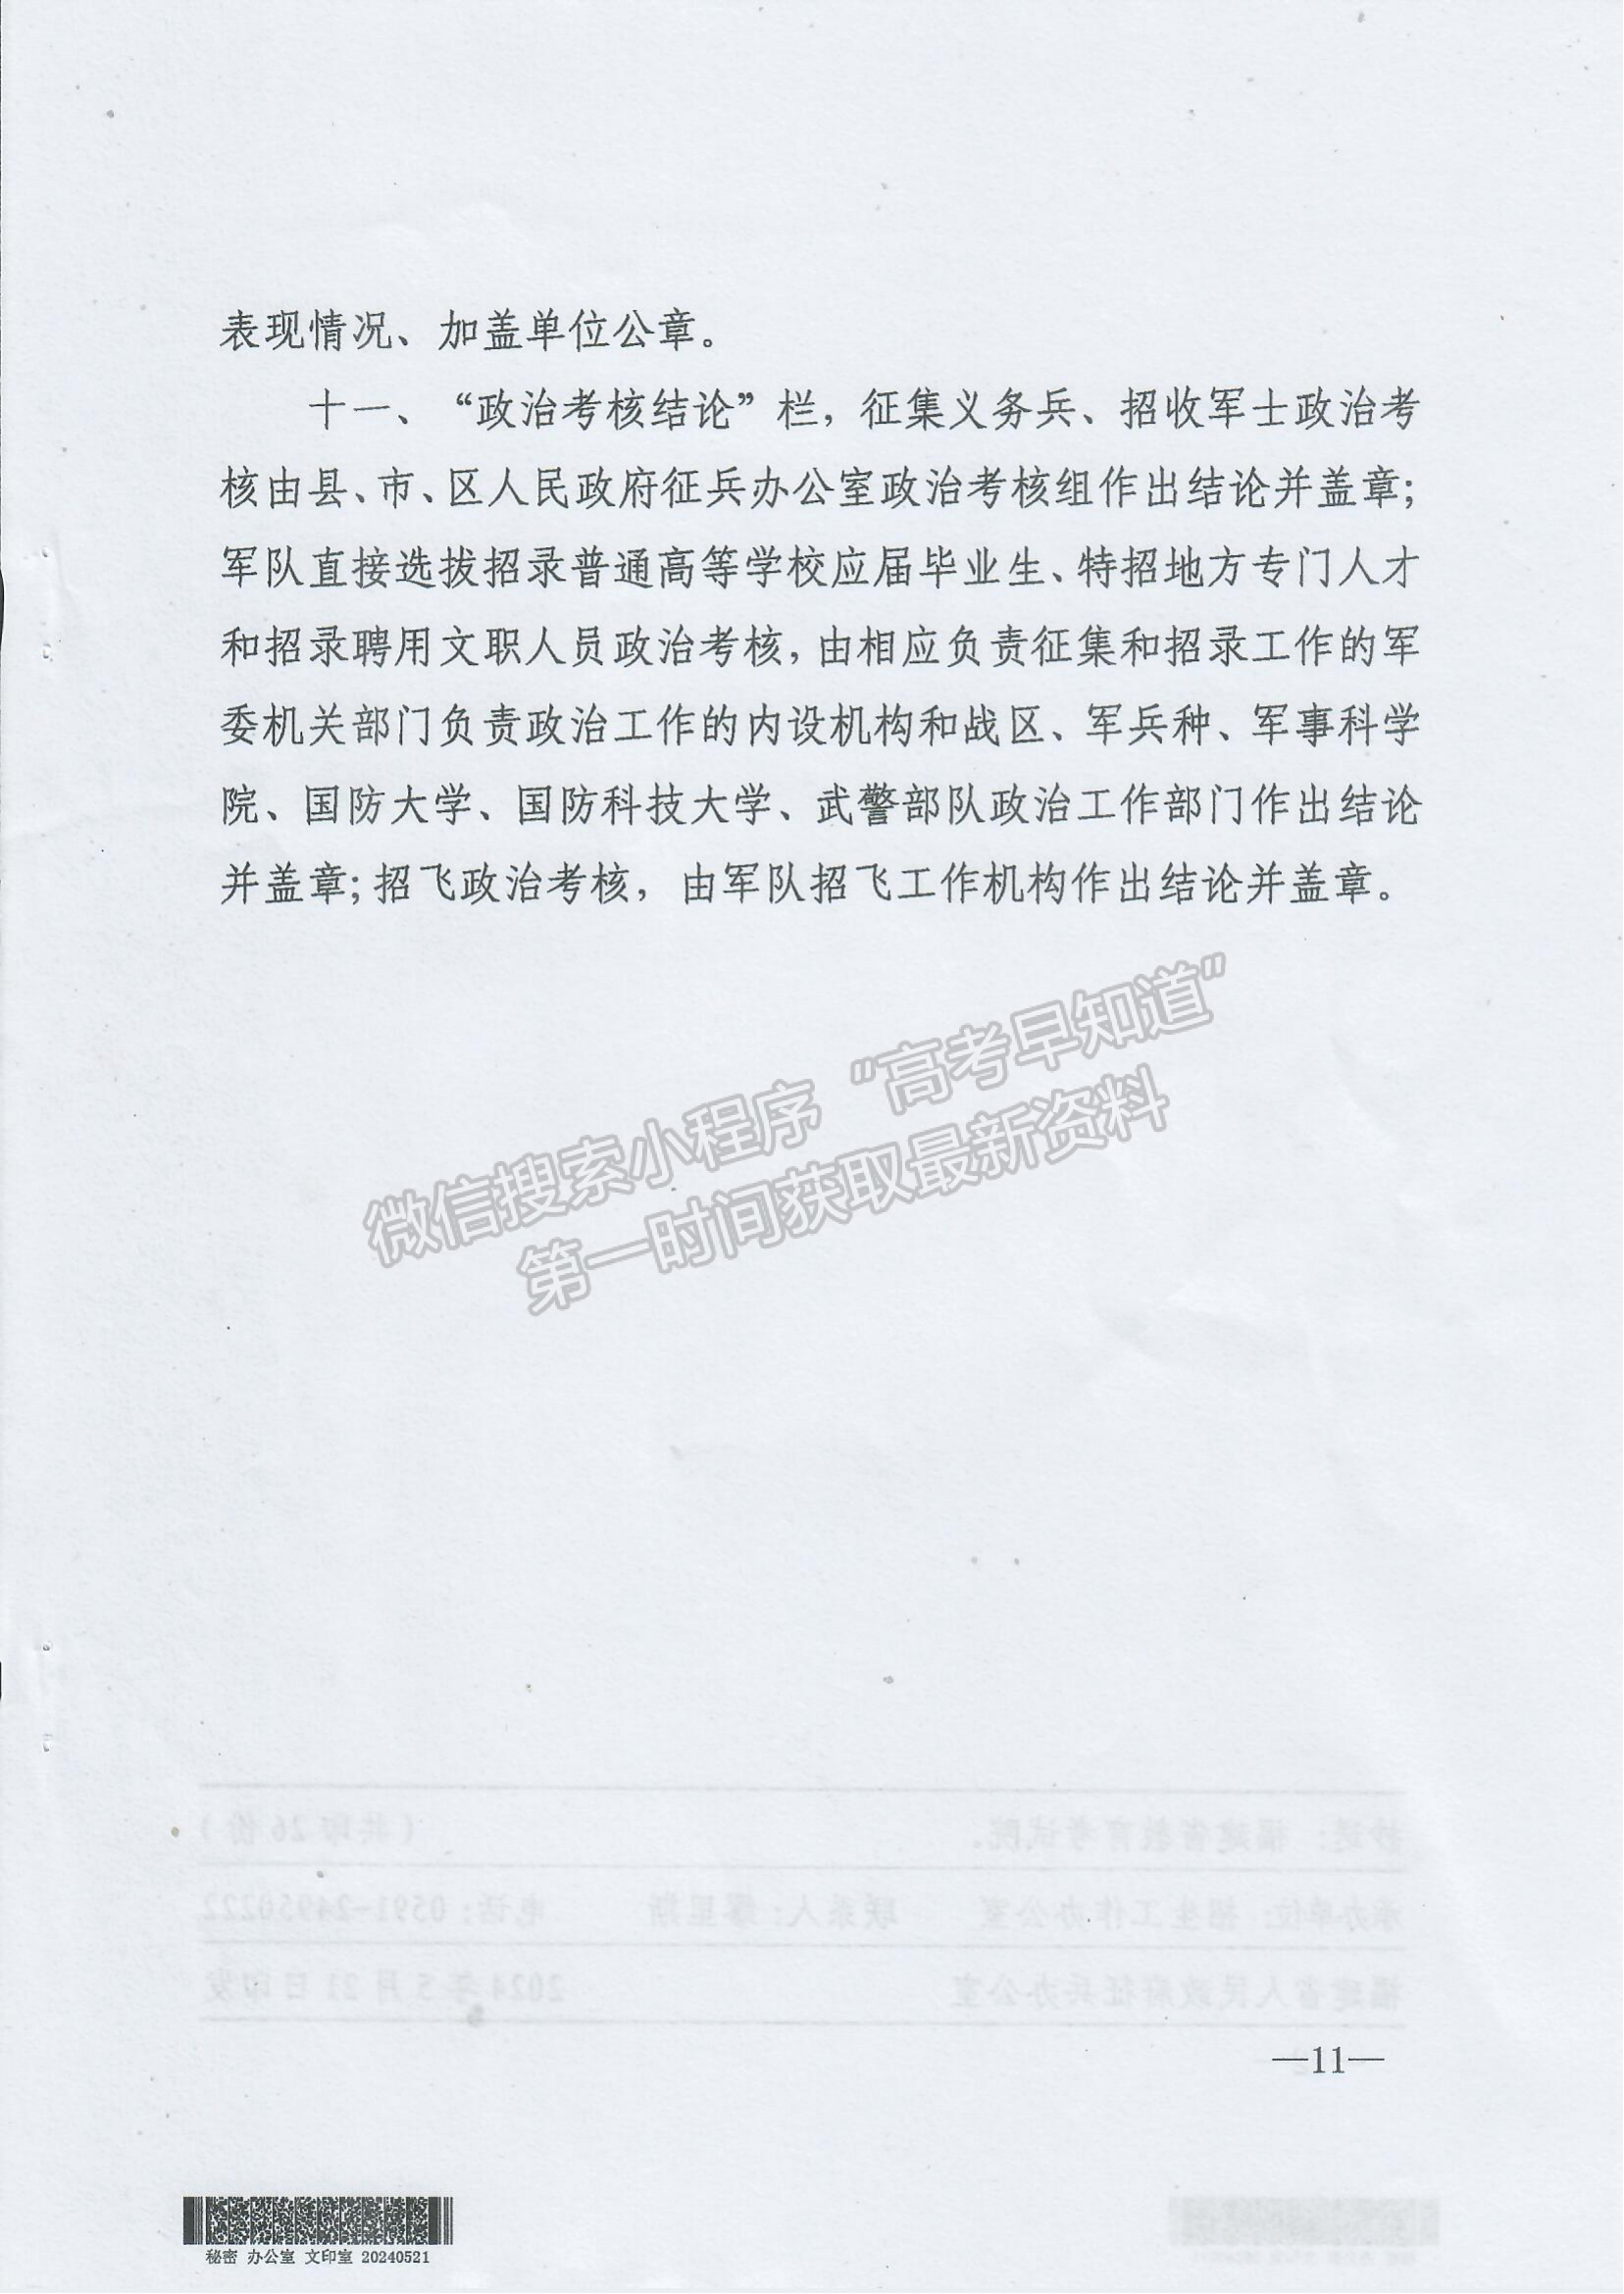 关于2024年军队院校招收福建省普通高中毕业生政治考核工作的通知